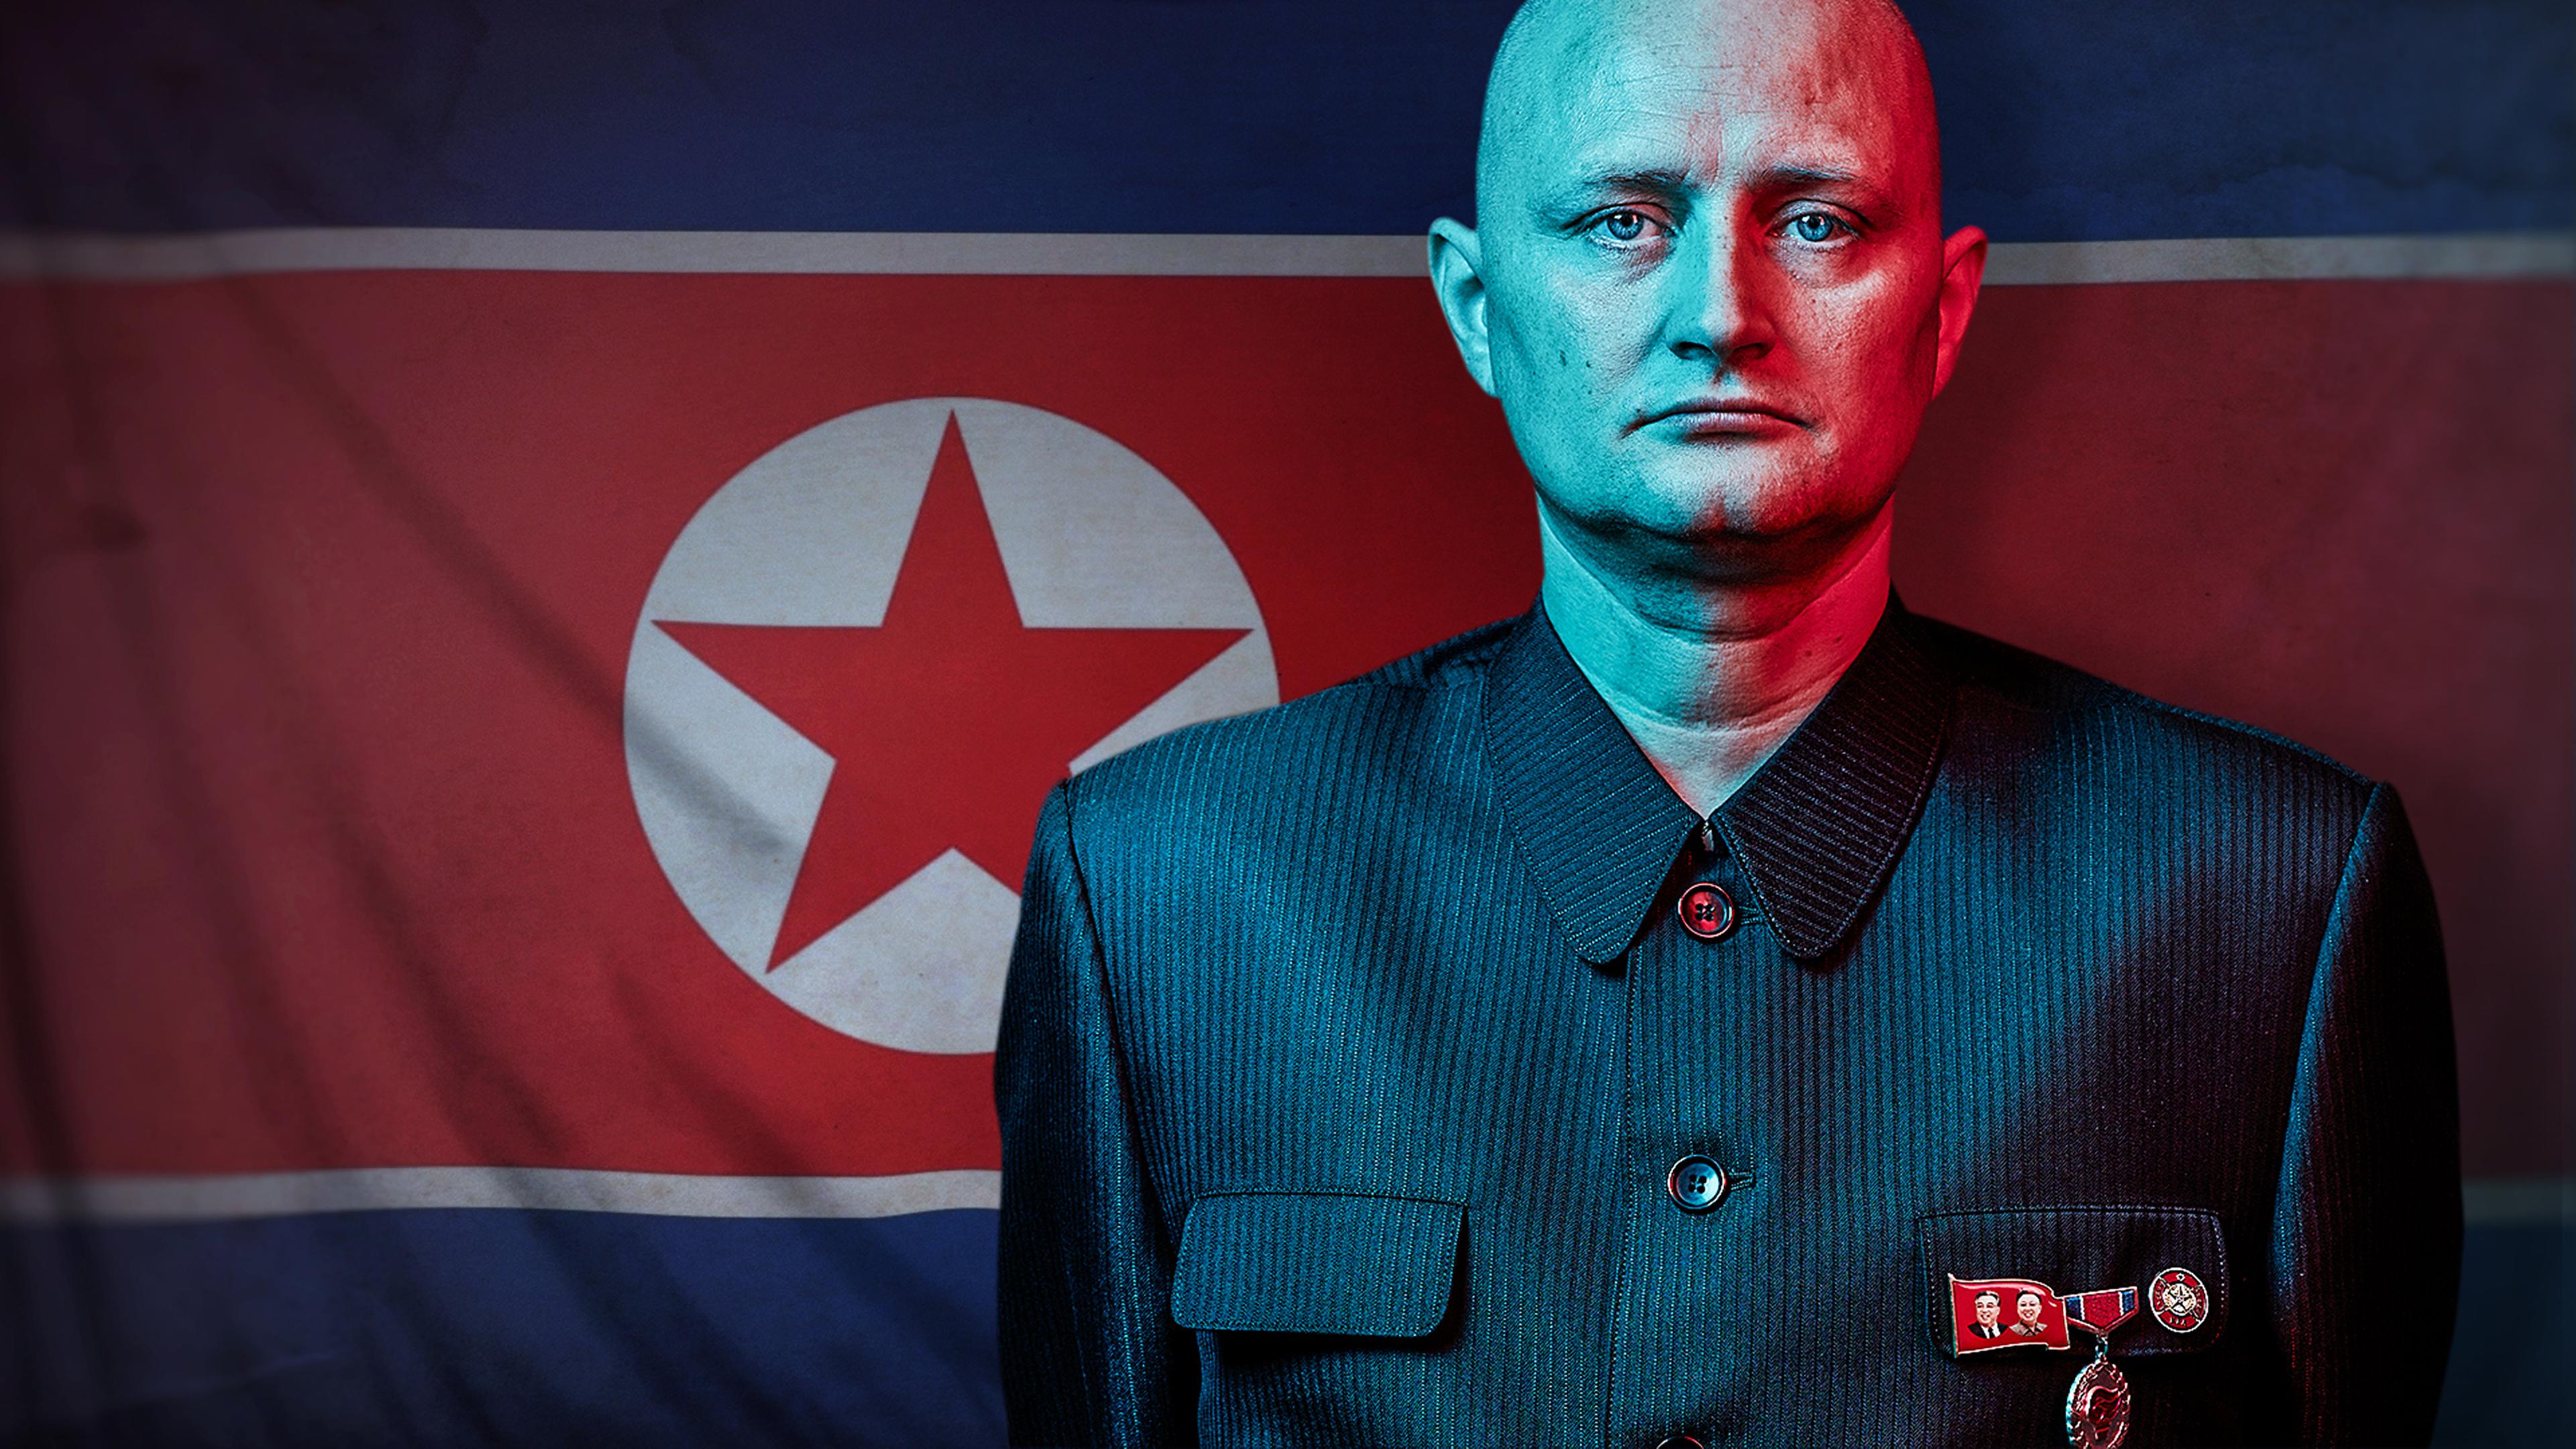 "Der Maulwurf - Undercover in Nordkorea: Freunde von Kim Jong Un ": Ein Mann in einer Uniform mit militärischen Abzeichen blickt ernst in die Kamera – im Hintergrund die nordkoreanische Flagge.